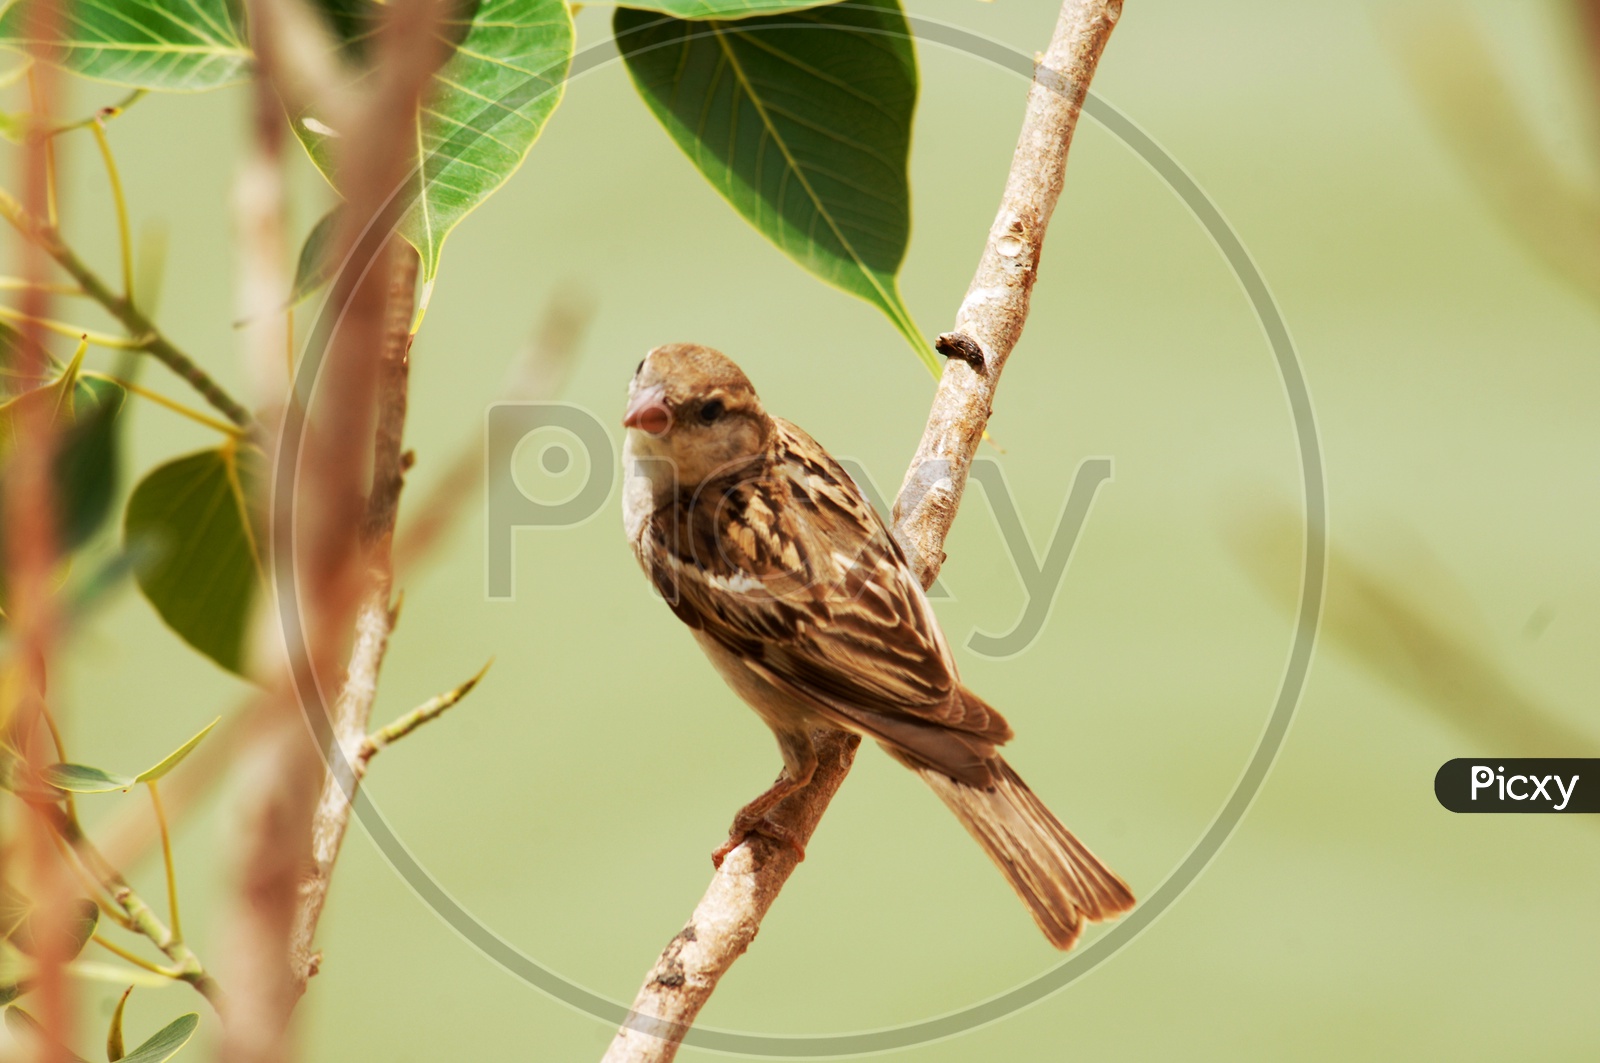 A Field sparrow